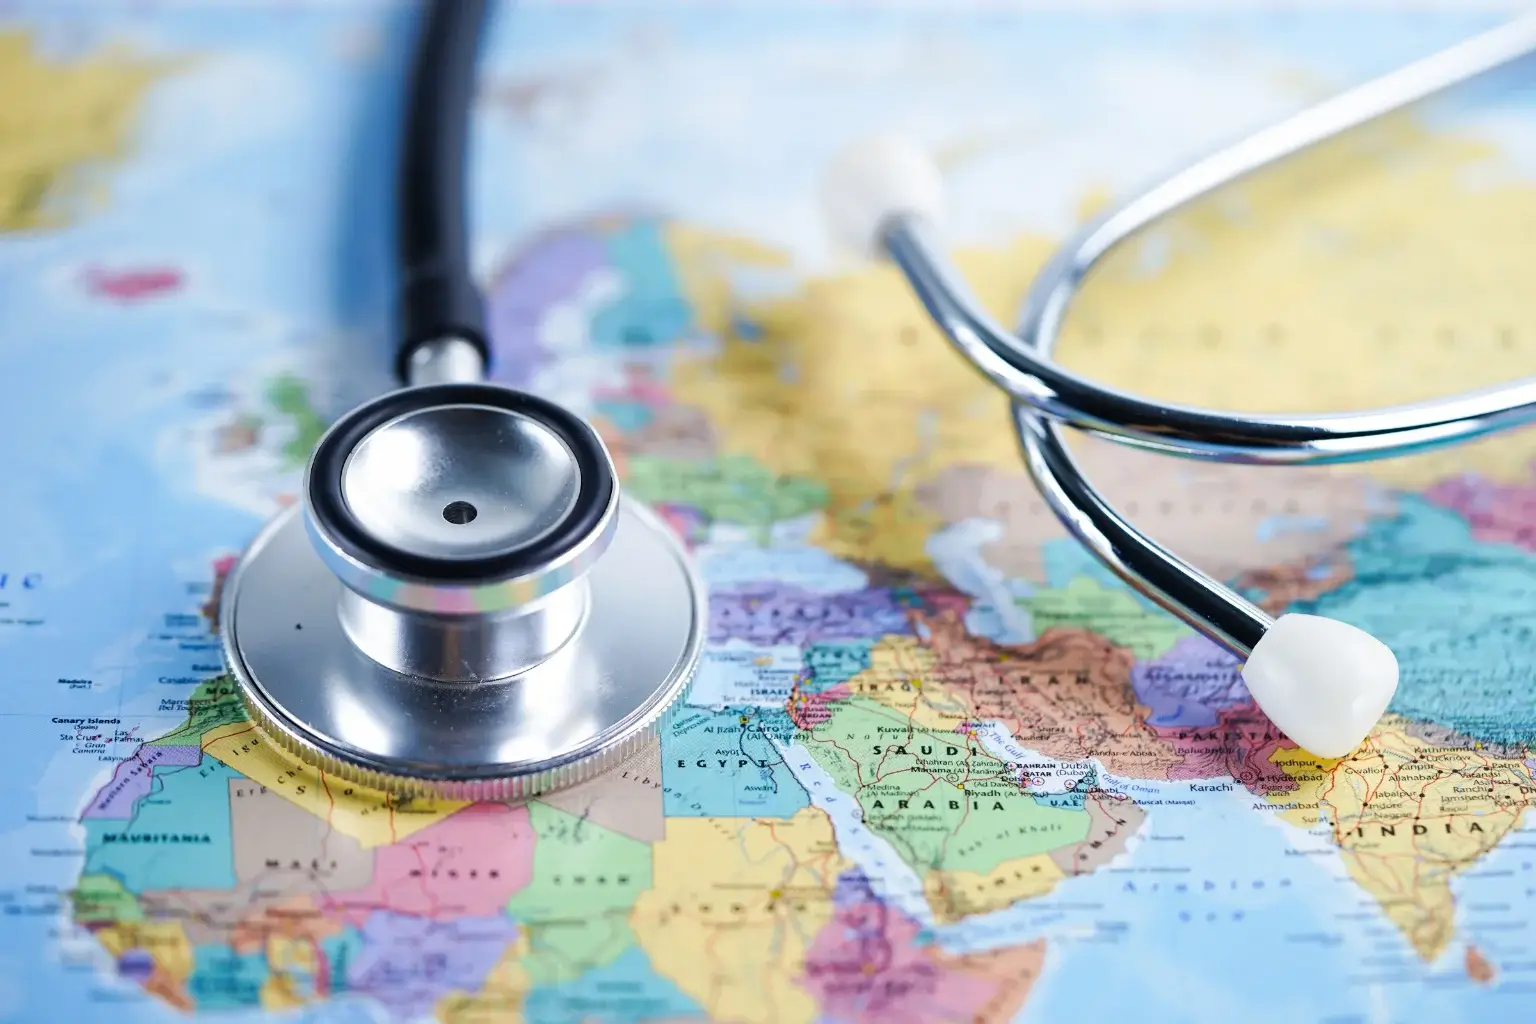 Medical Tourism - Healing Beyond Borders